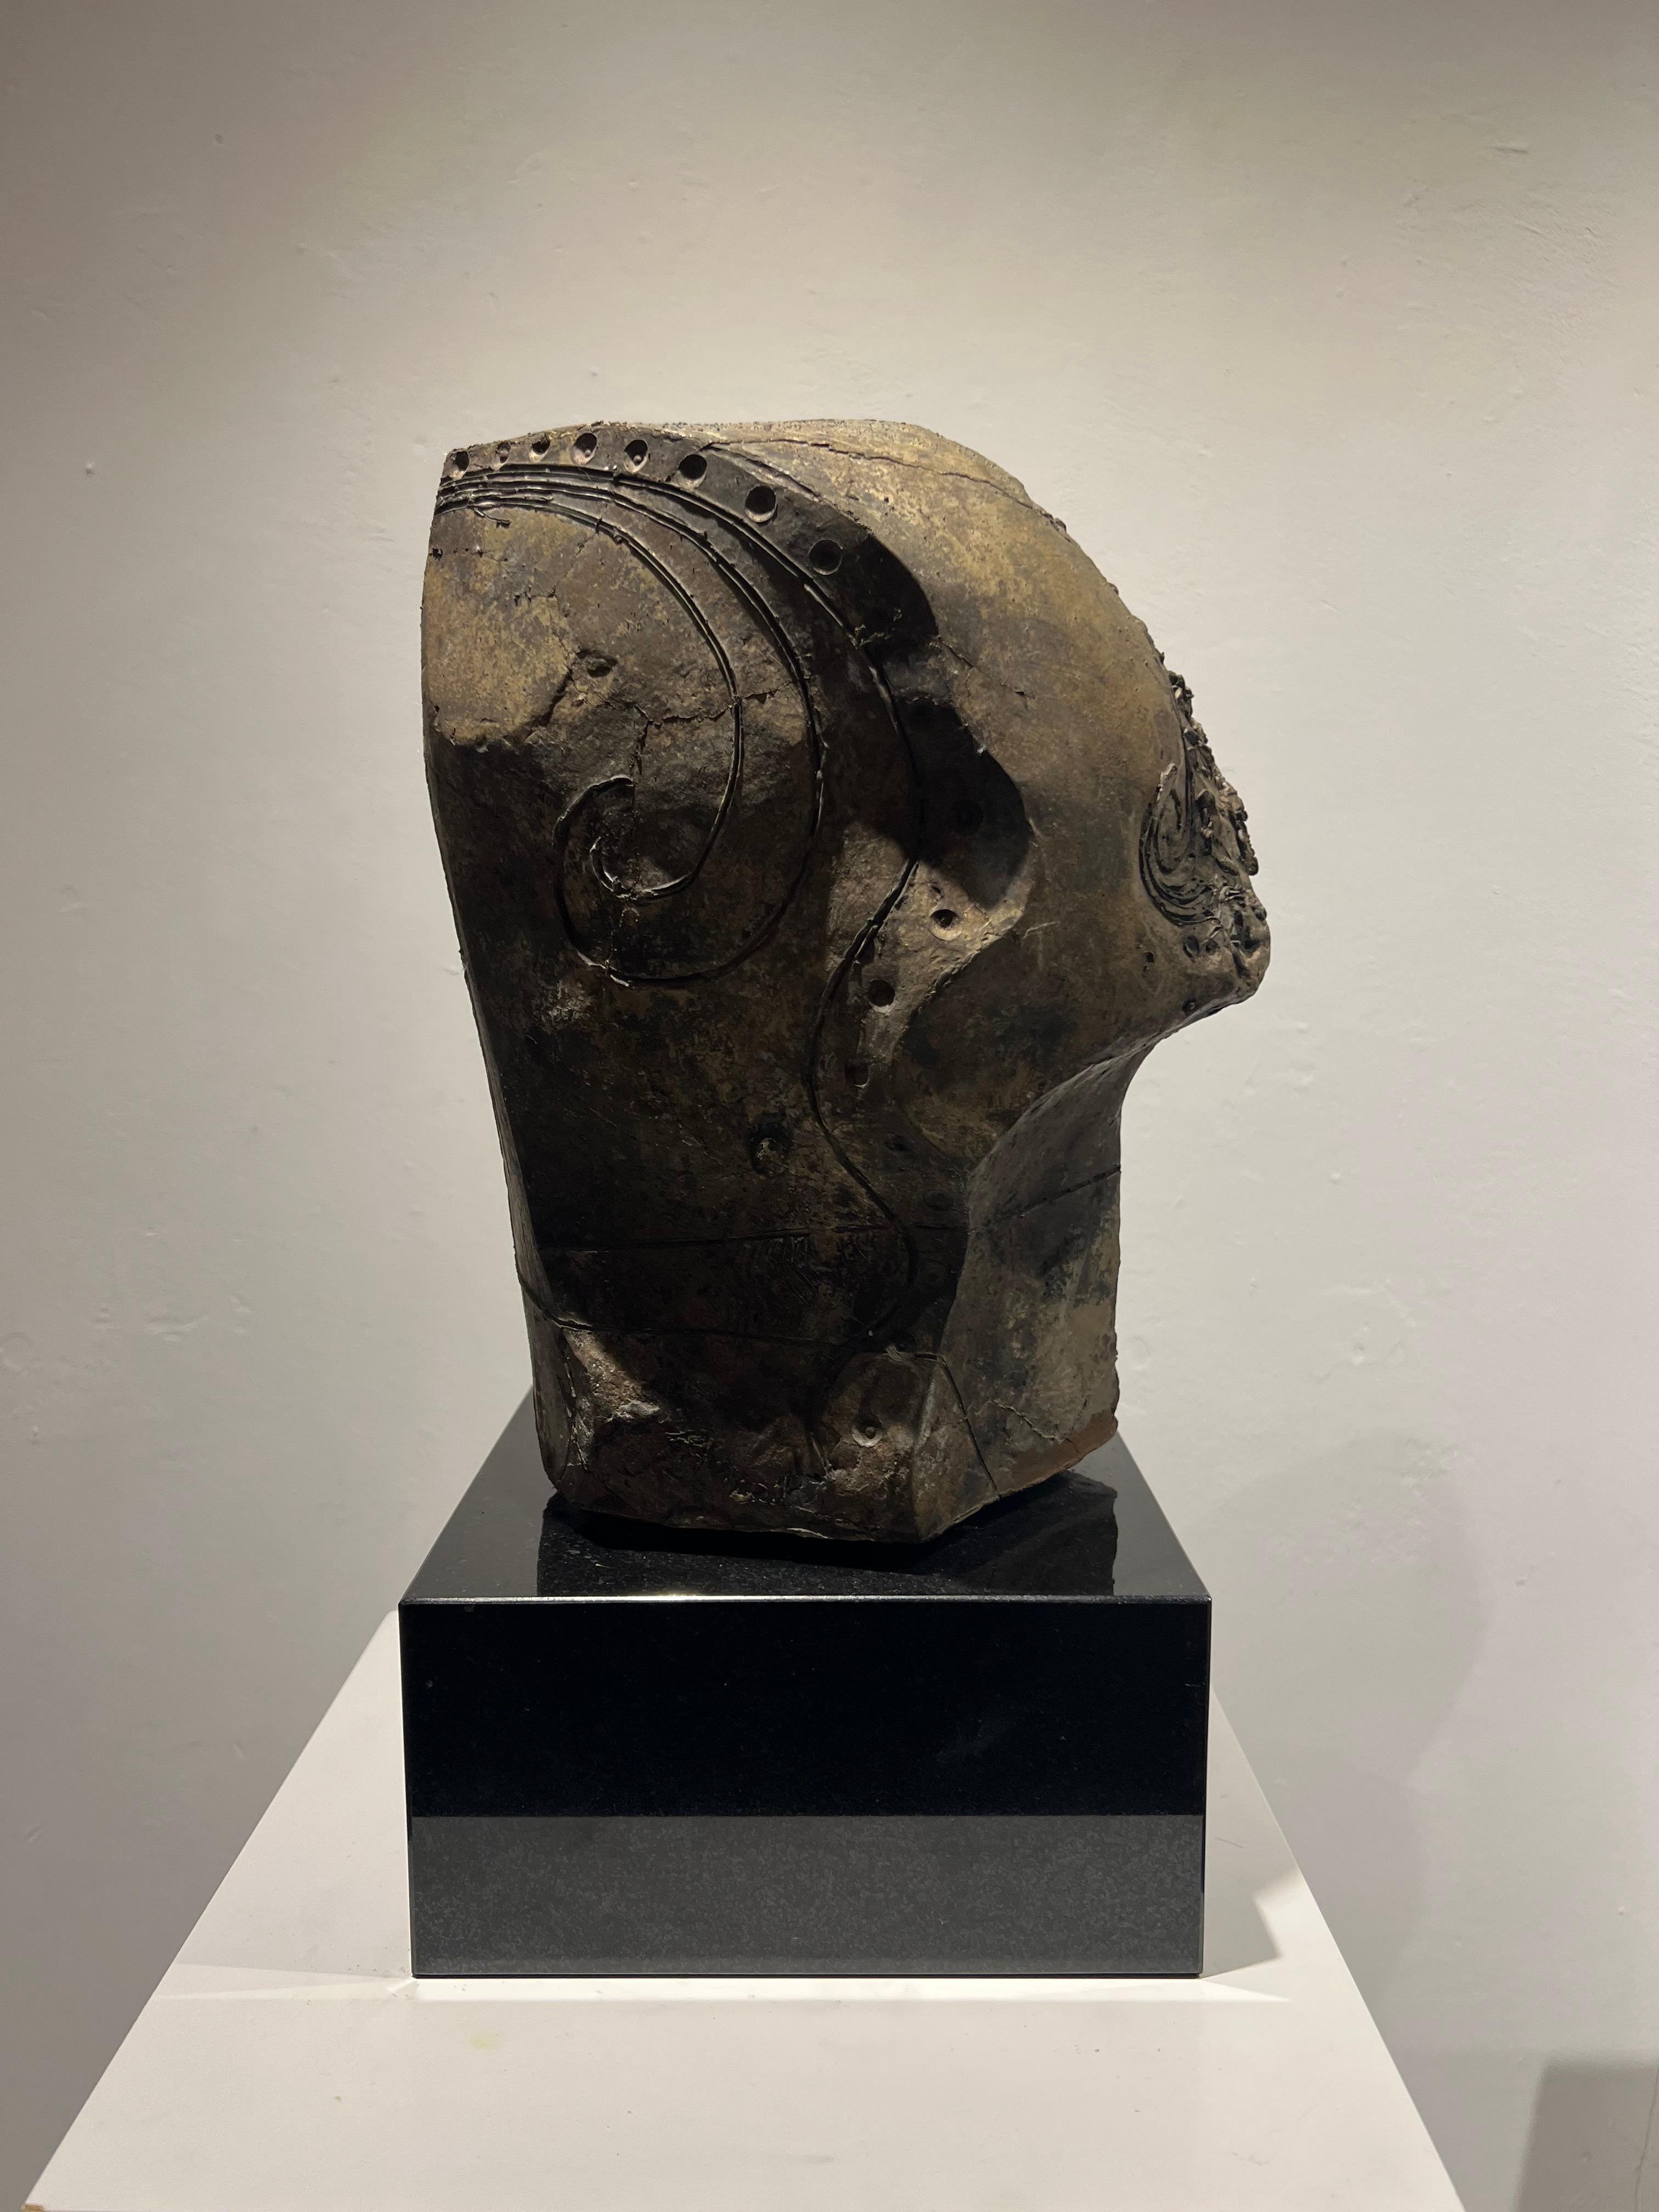 Tête abstraite sculptée en bronze, cercle intérieur coulé, édition limitée - Contemporain Sculpture par Thomas Junghans